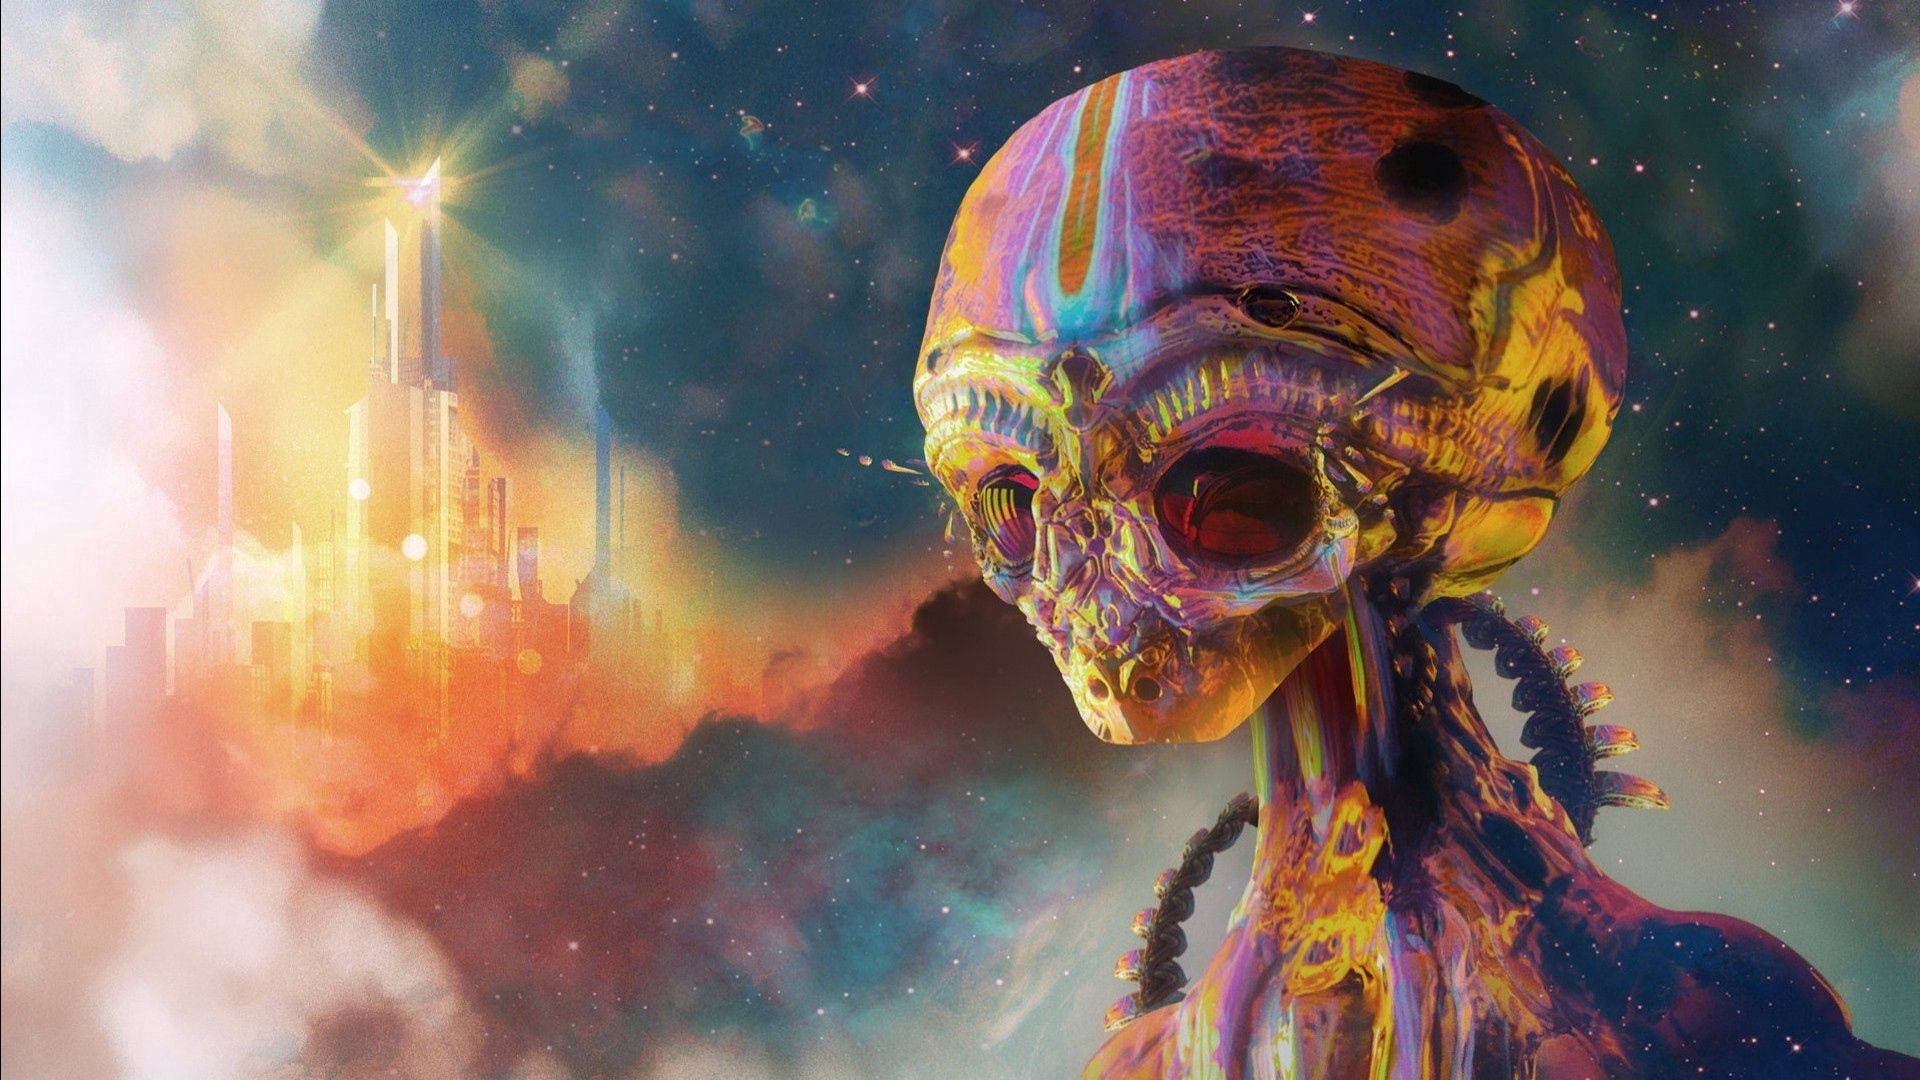 Top 999+ Alien Wallpaper Full HD, 4K✅Free to Use